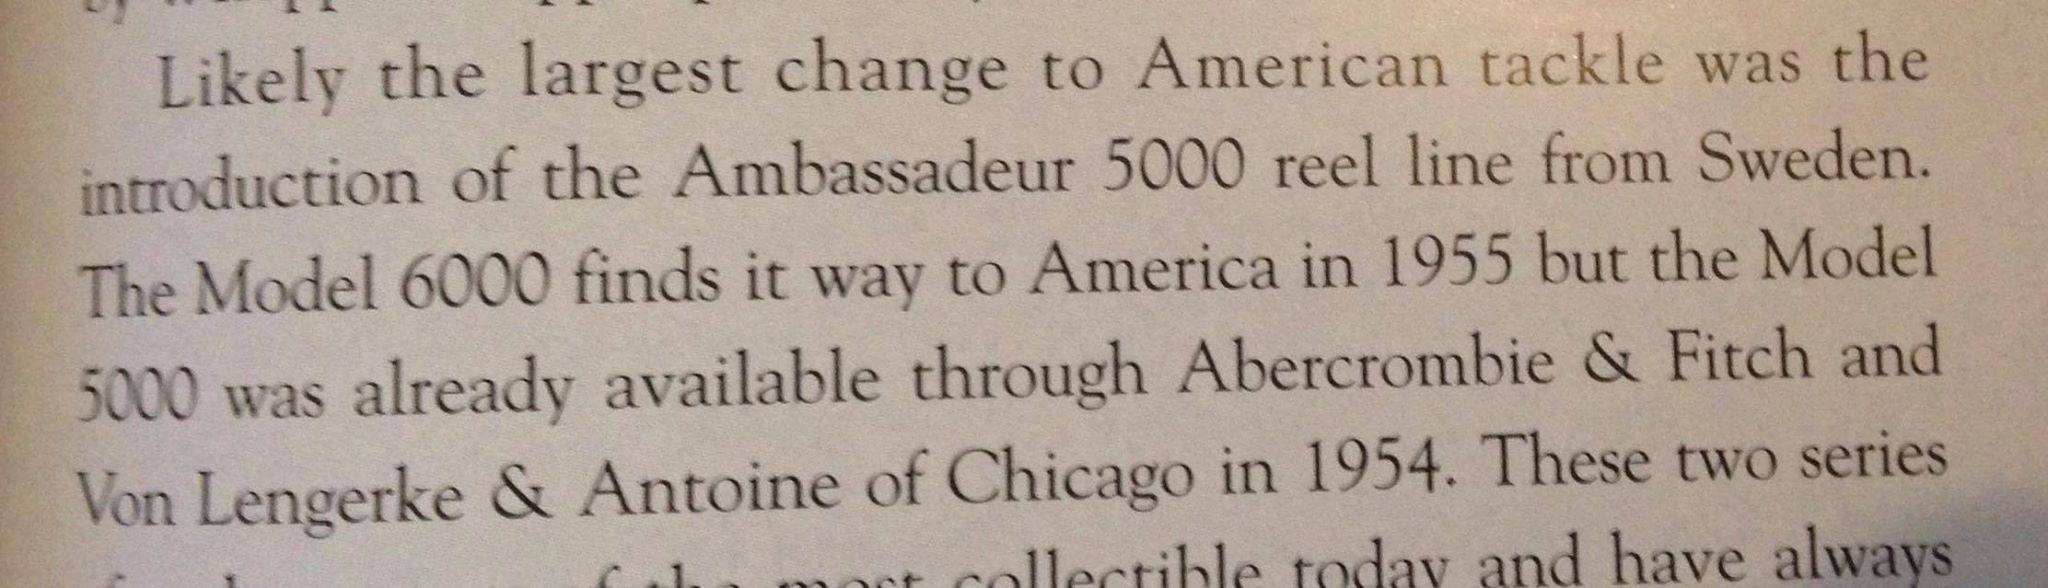 บริษัทเสื้อผ้าแบรน ชื่อดัง Abercrombie & Fitch ใครจะรู้ว่าครั้งนึง ก็เคยขายรอก Ambassadeur 5000 